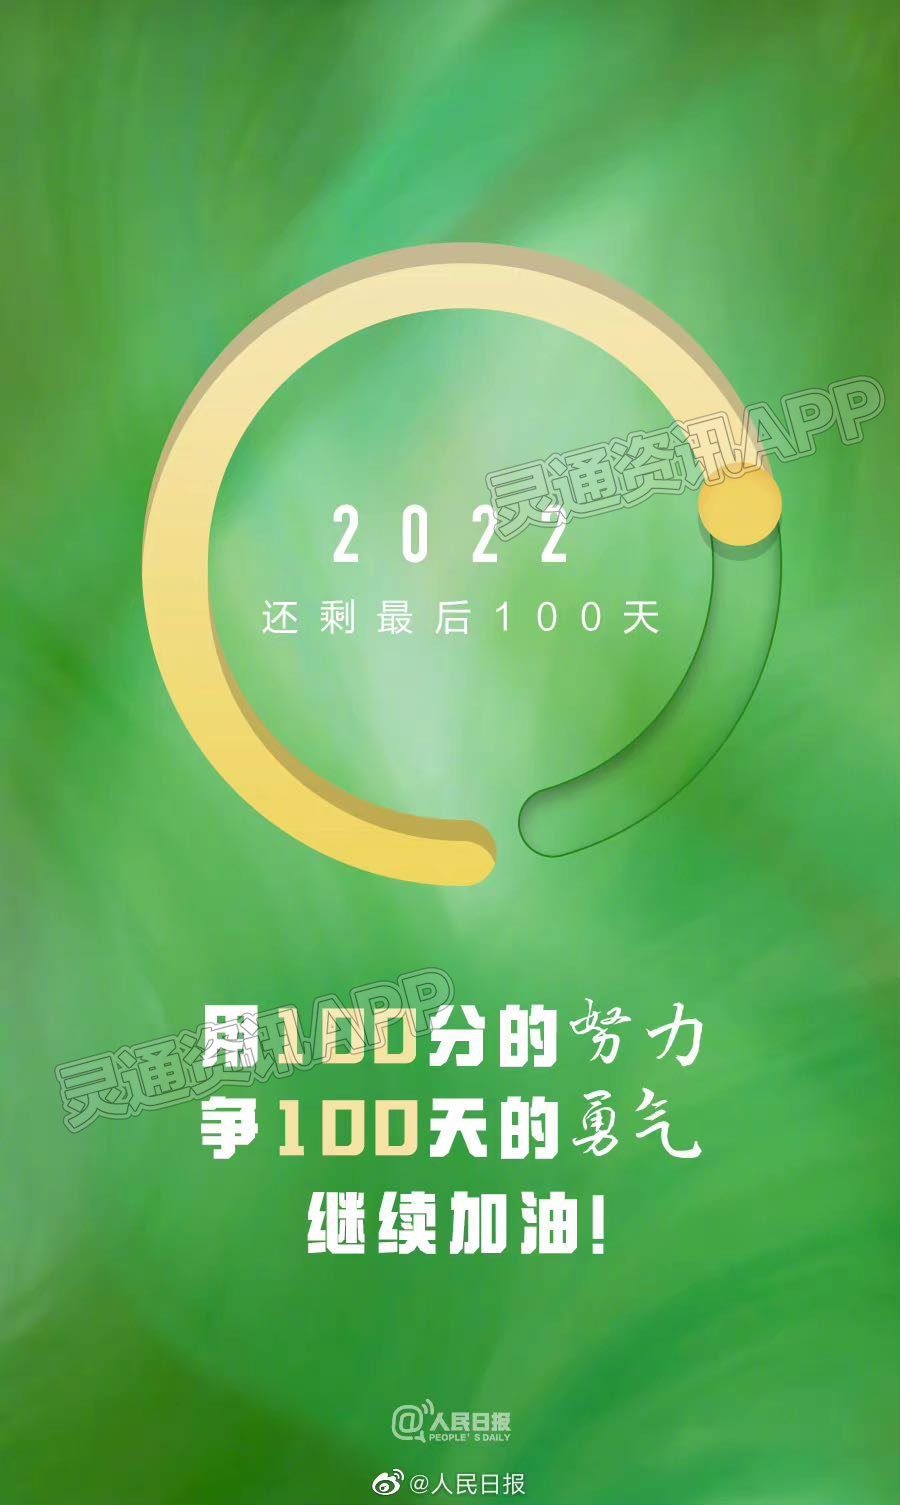 【hq体育官网】2022年最后100天:心愿达成了吗?减肥成功了吗?存款了吗？